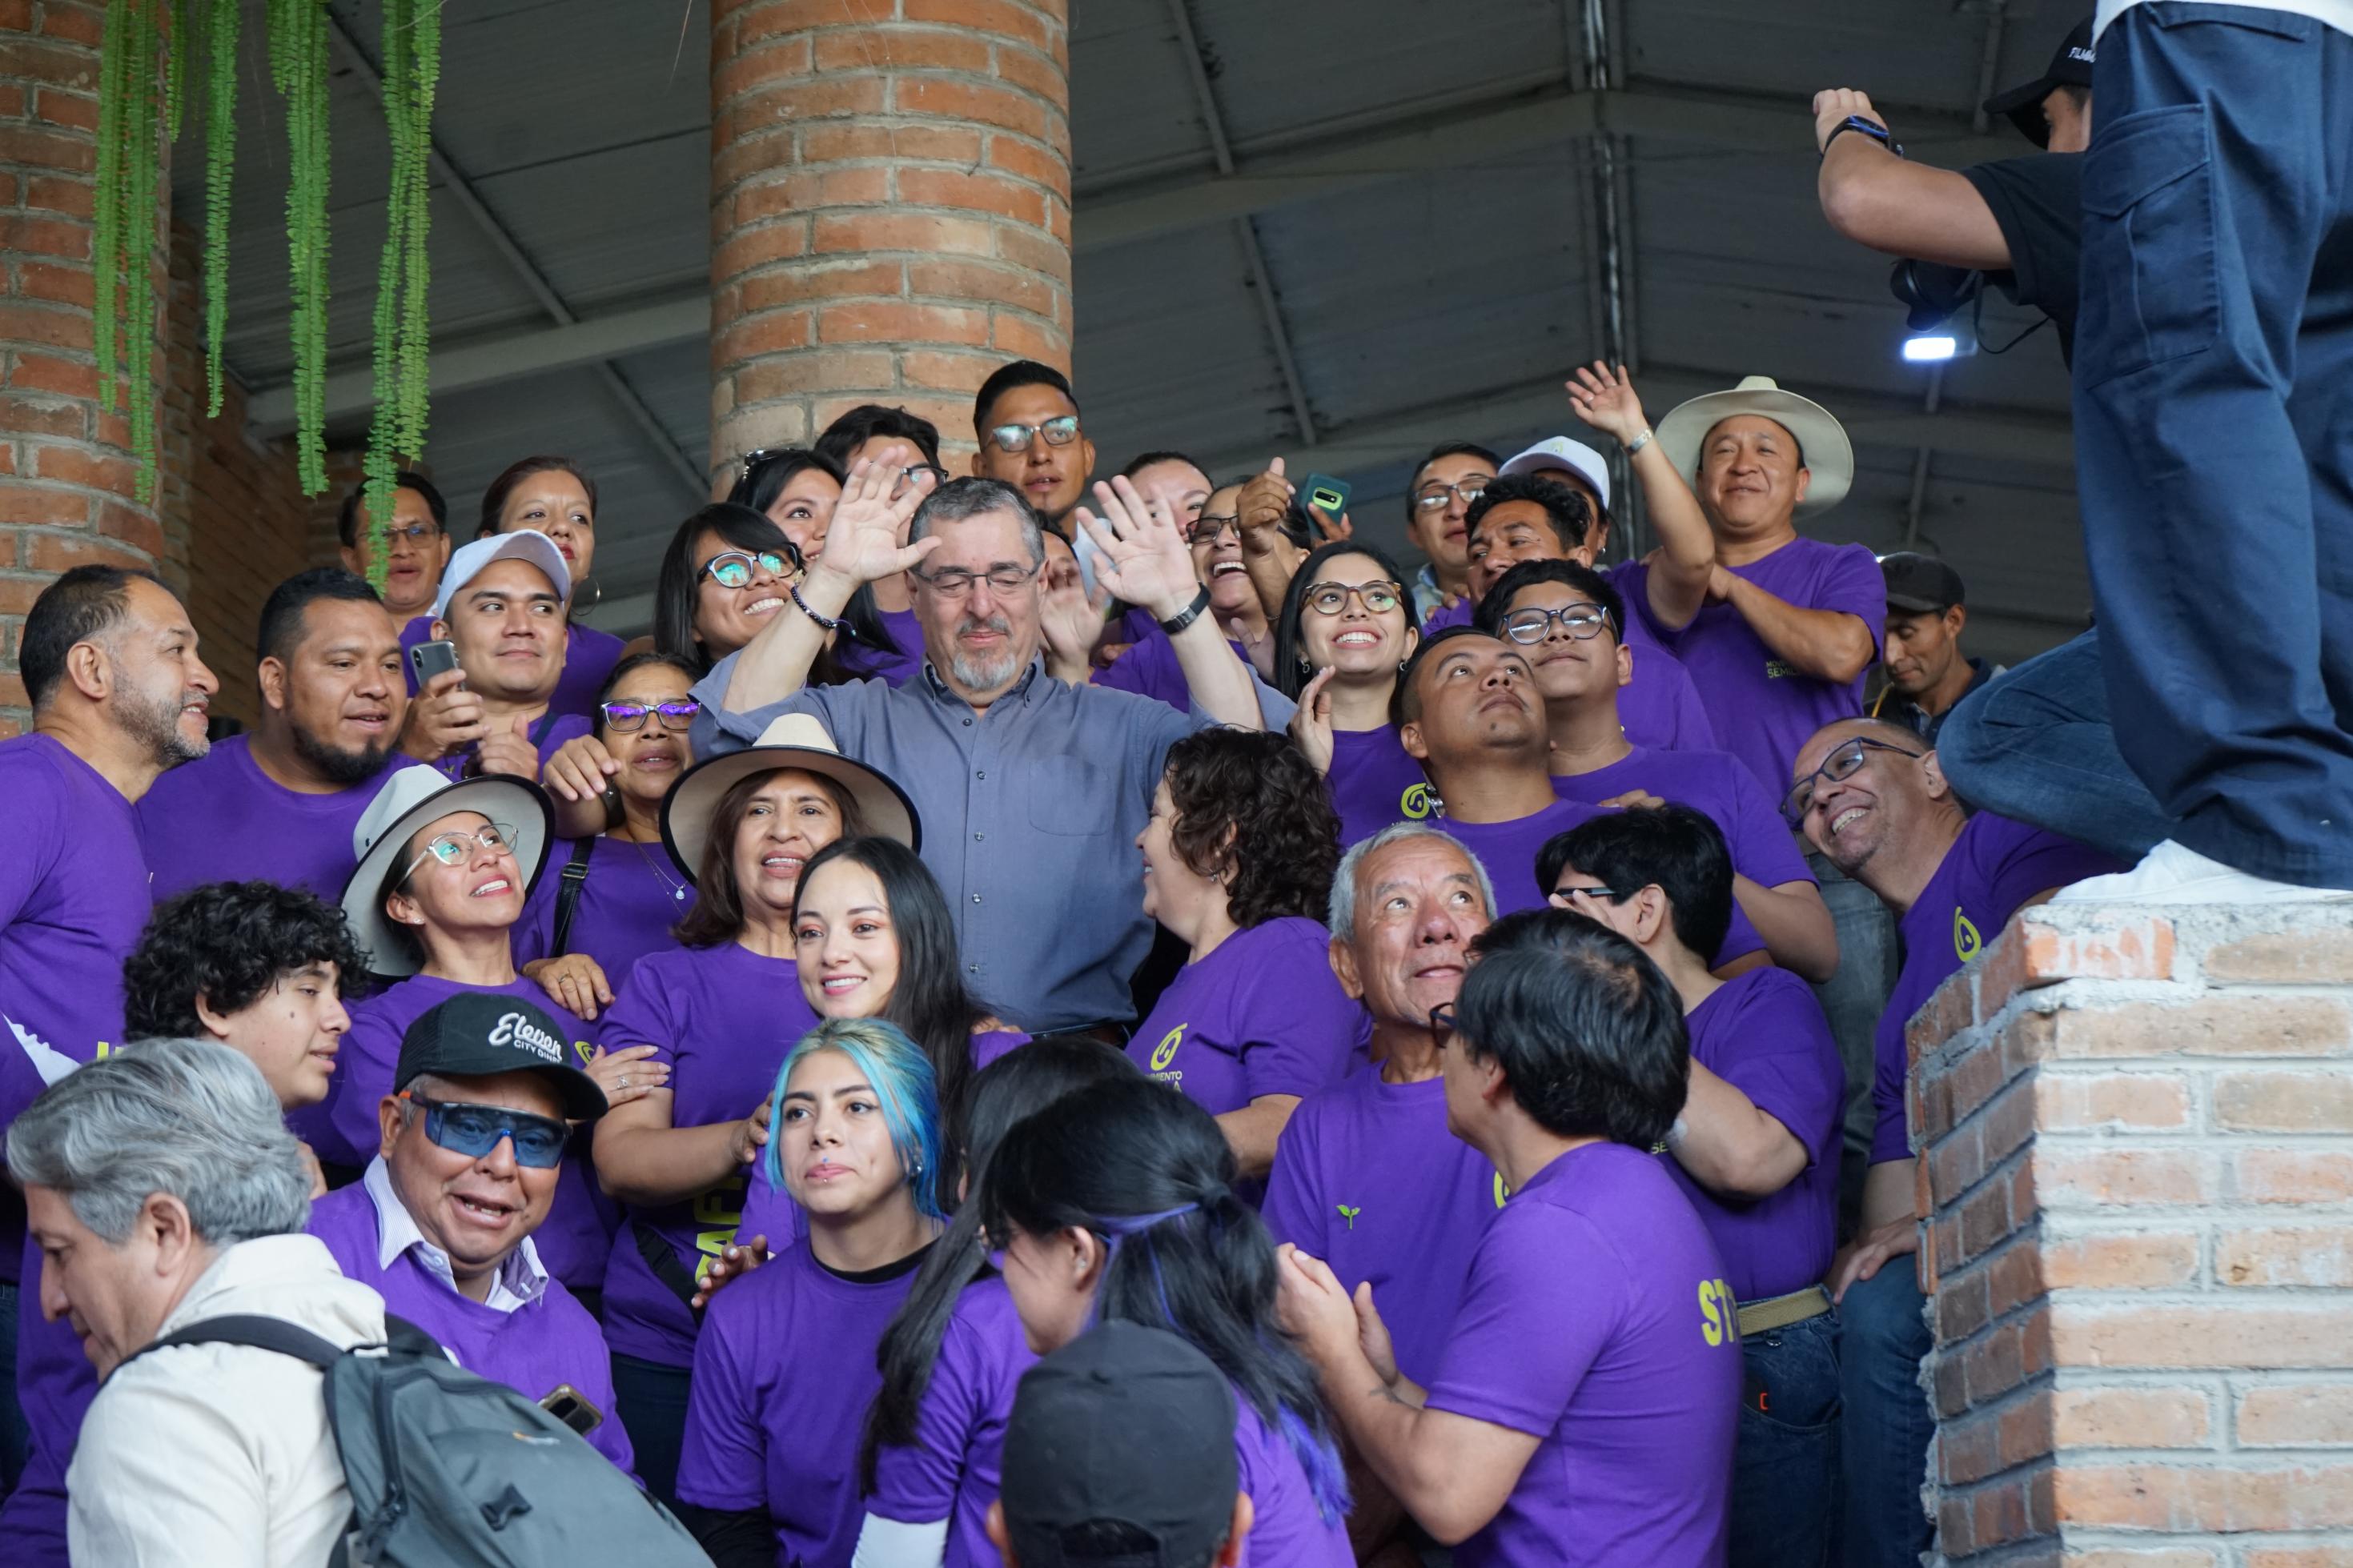 Arévalo winkt in die Kamera, umgeben von lila gekleideten hauptsächlich jungen Leuten.